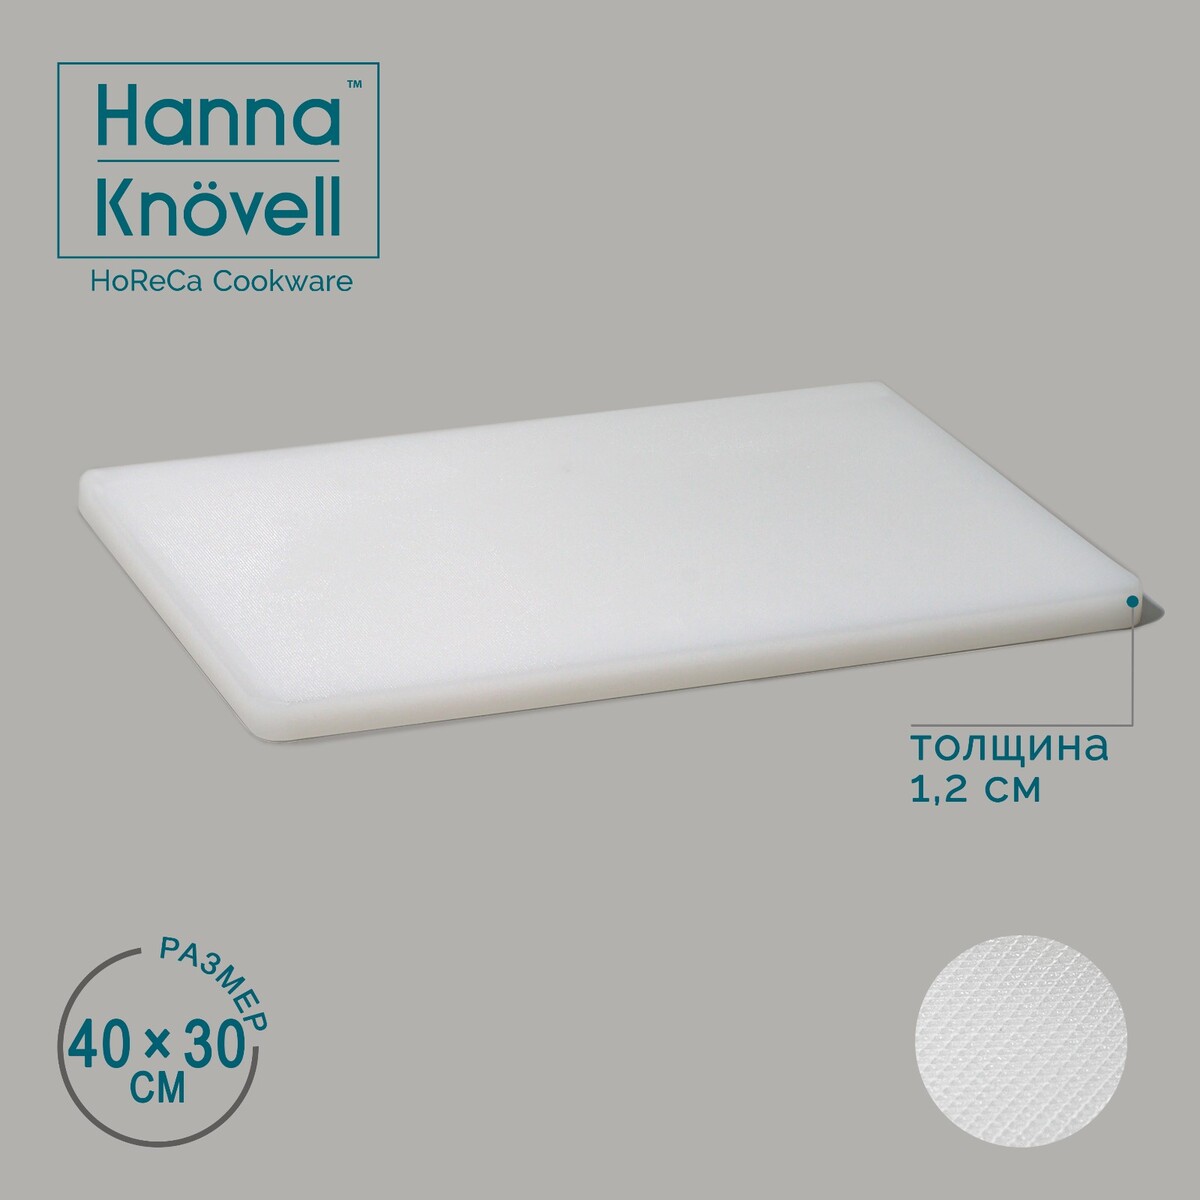 Доска профессиональная разделочная hanna knövell, 40×30×1,2 см, цвет белый доска разделочная 38 х 25 см guffman белый